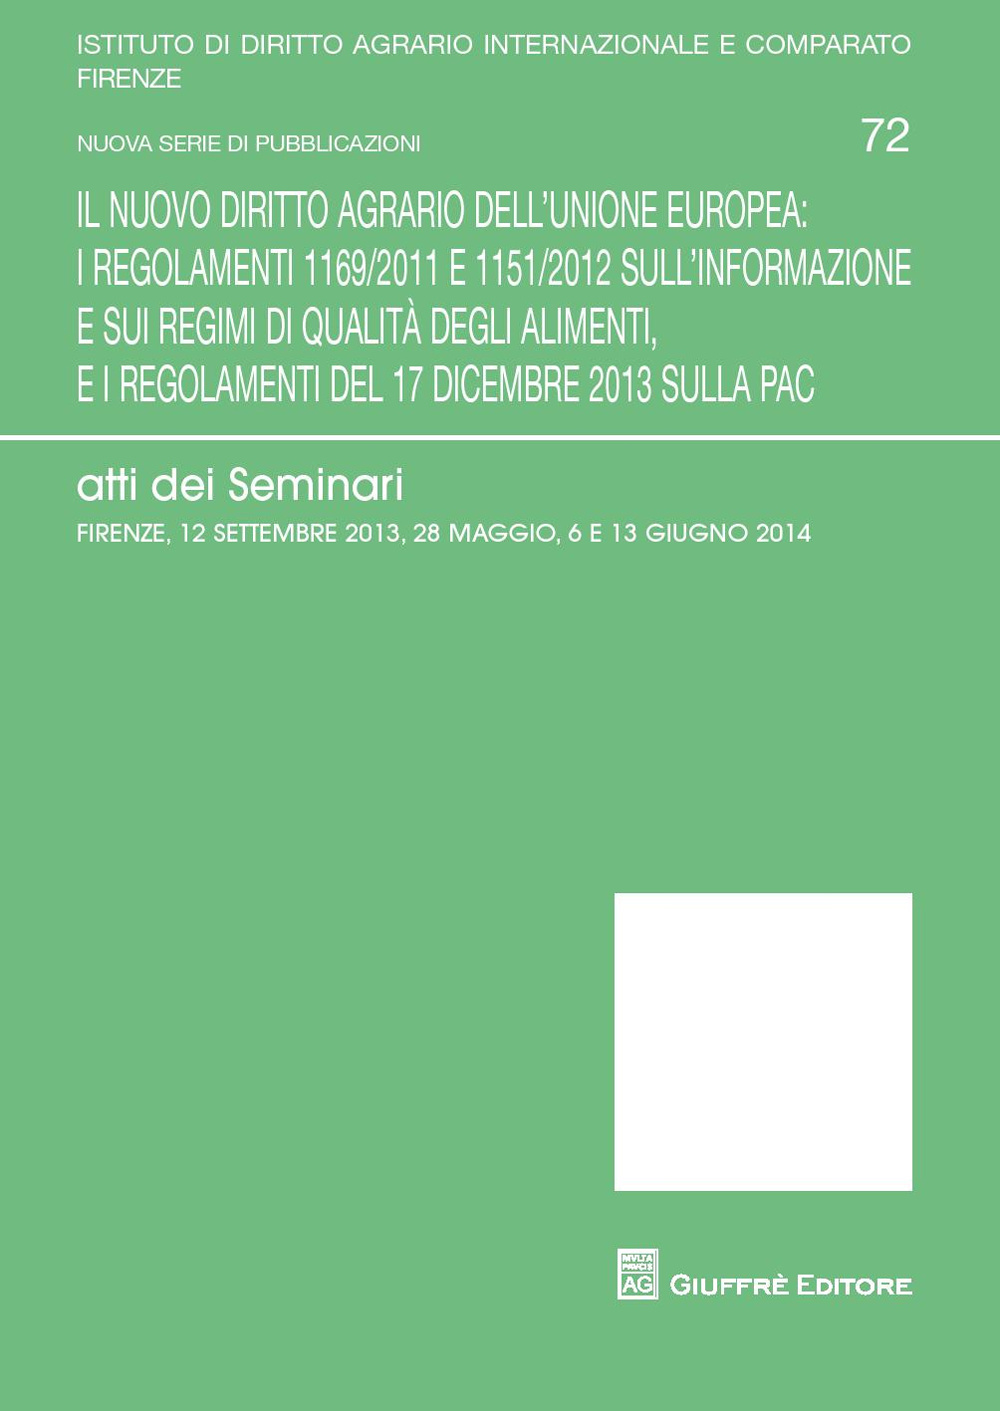 Il nuovo diritto agrario dell'Unione Europea. Atti dei Seminari (Firenze 12 settembre 2013-28 maggio-6 e 13 giugno 2014)